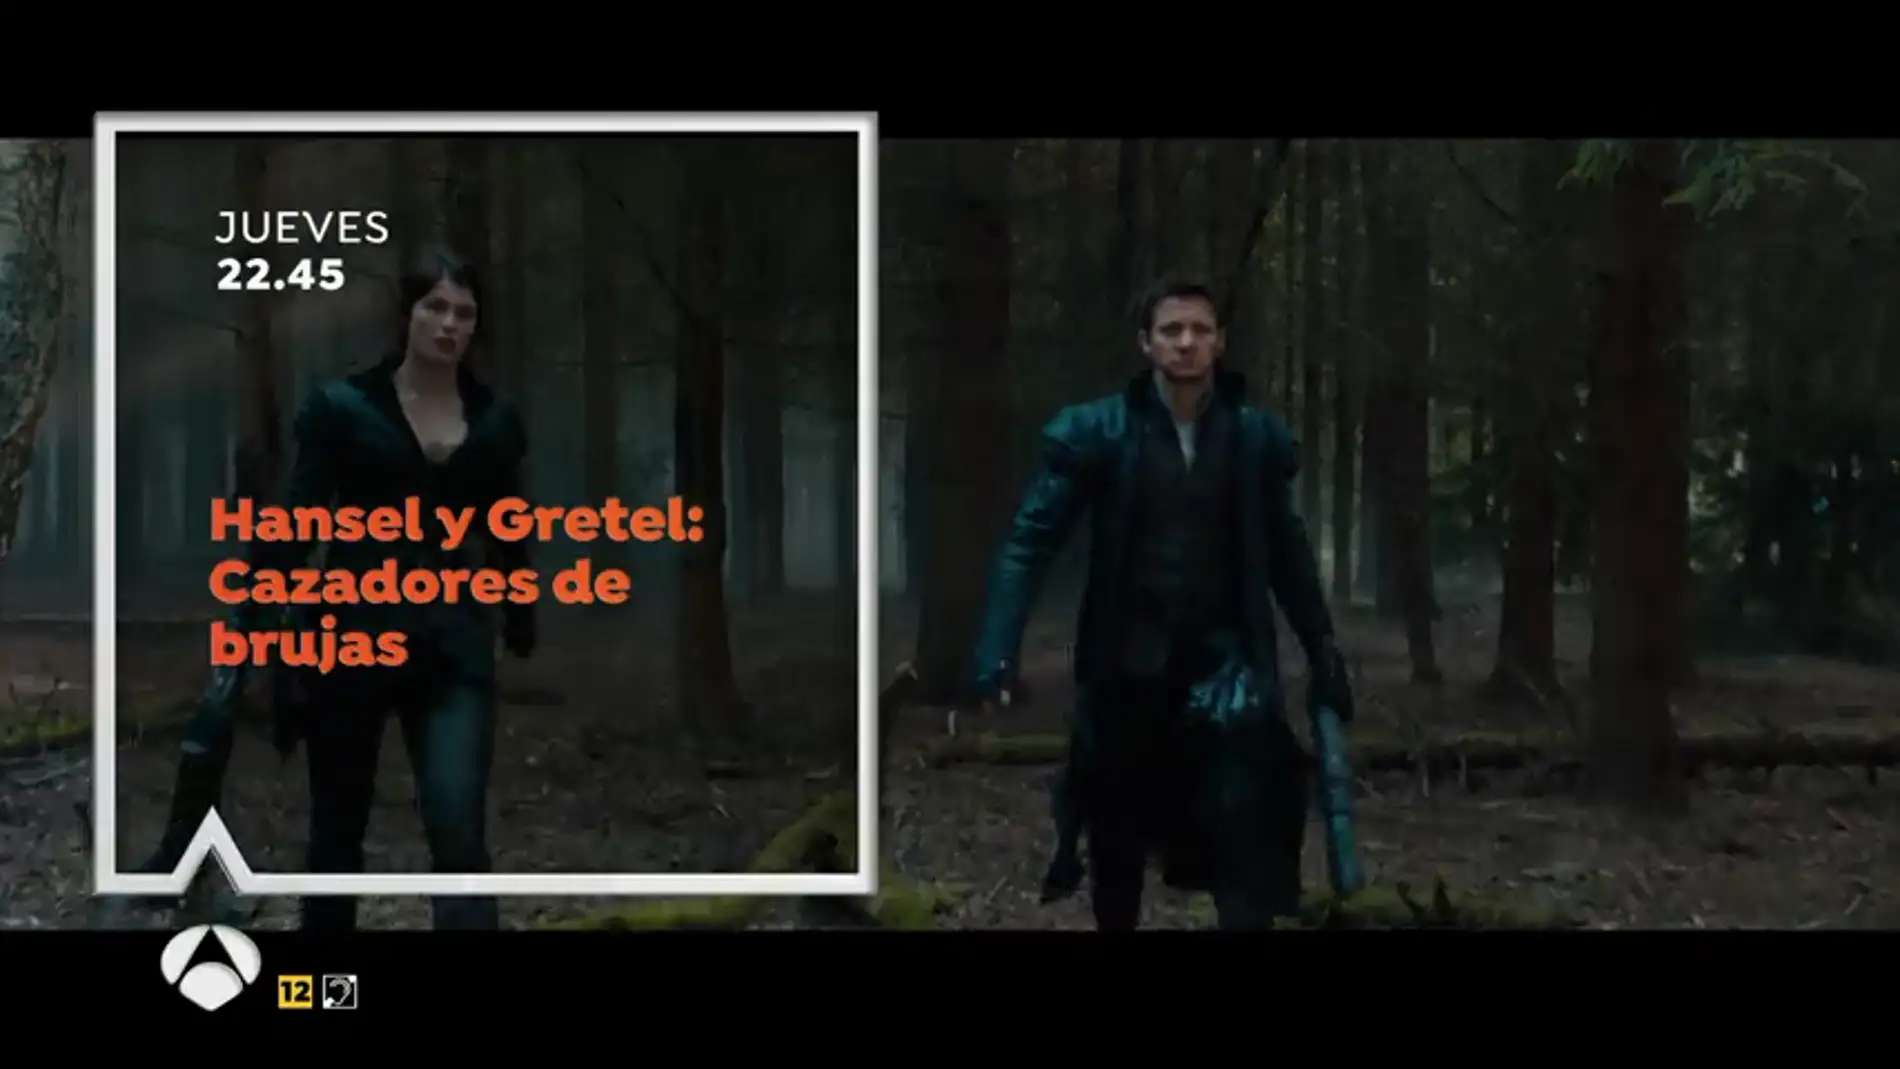 Jeremy Renner y Gemma Arterton protagonizan 'Hansel y Gretel: Cazadores de brujas' en Antena 3ESTE JUEVES EN ANTENA 3